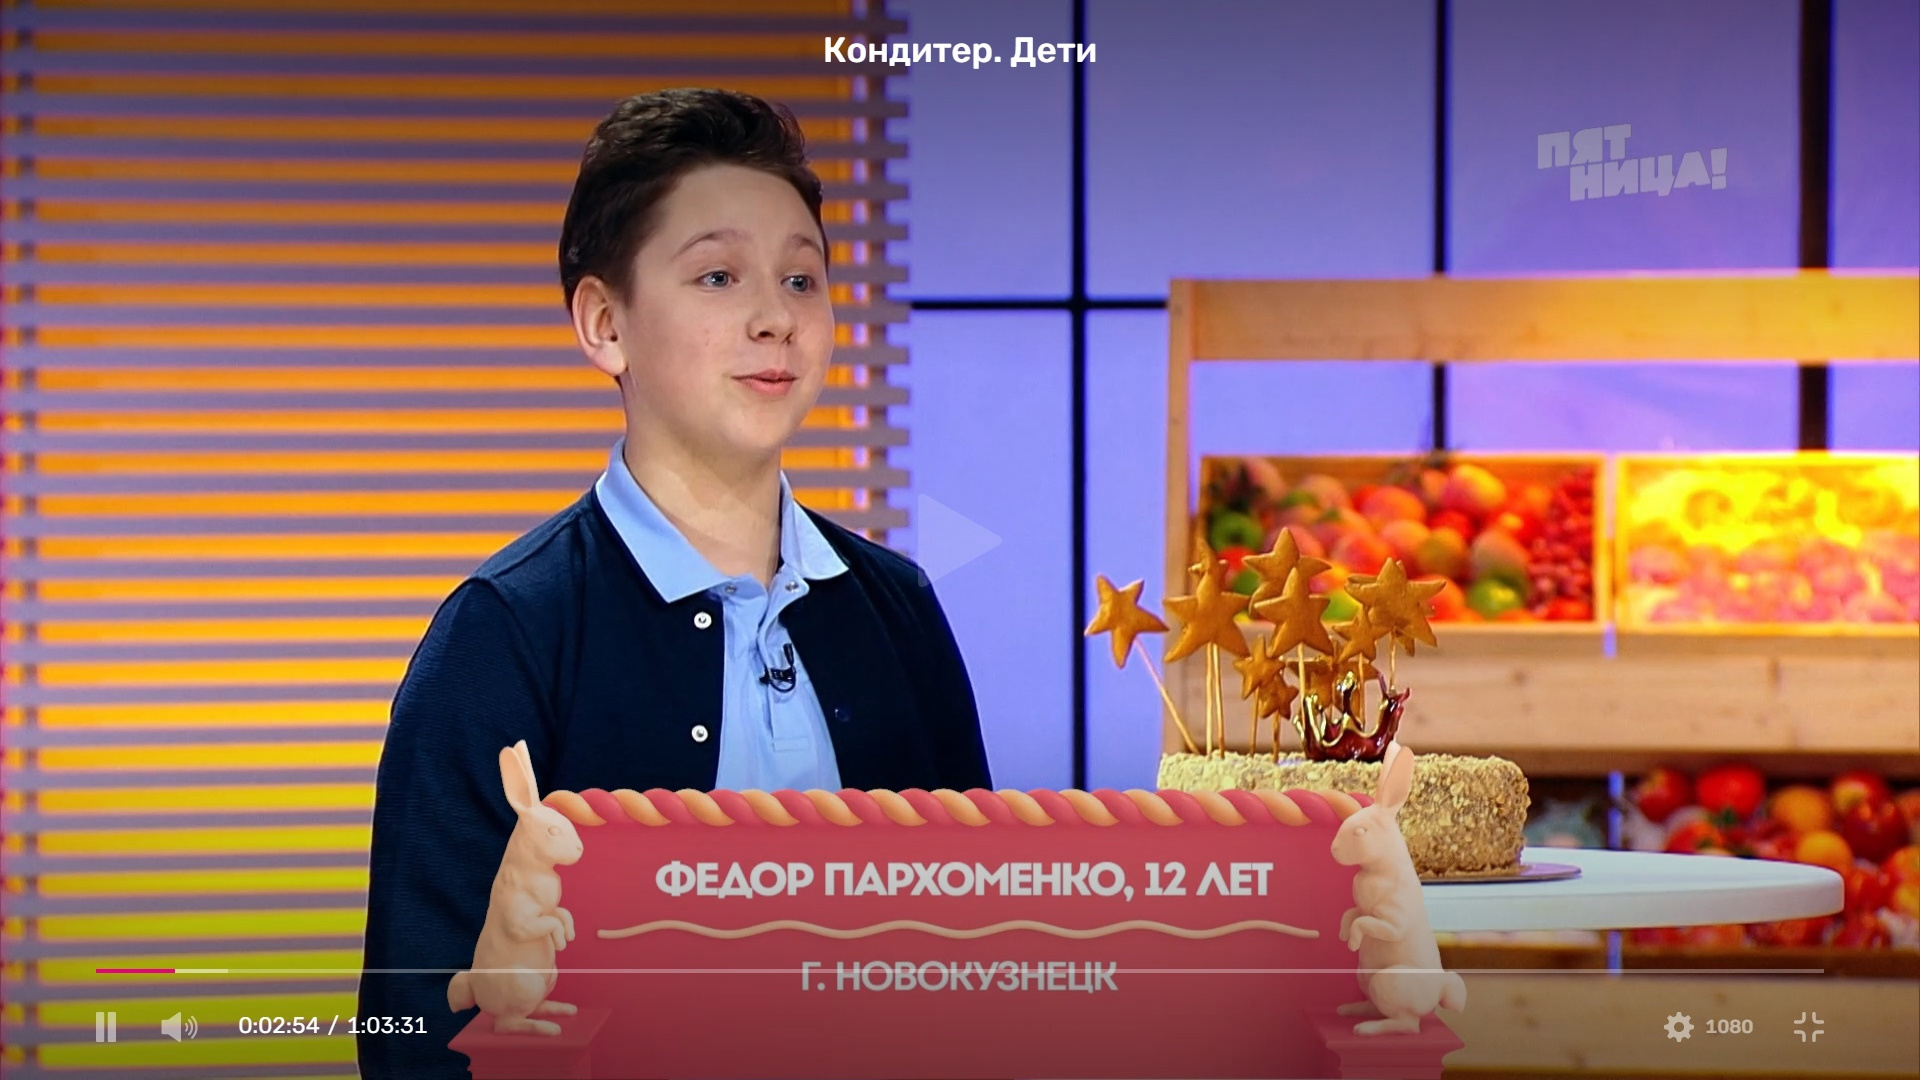 «Агзамов в шоке»: школьник-кондитер из Новокузнецка попал в телешоу